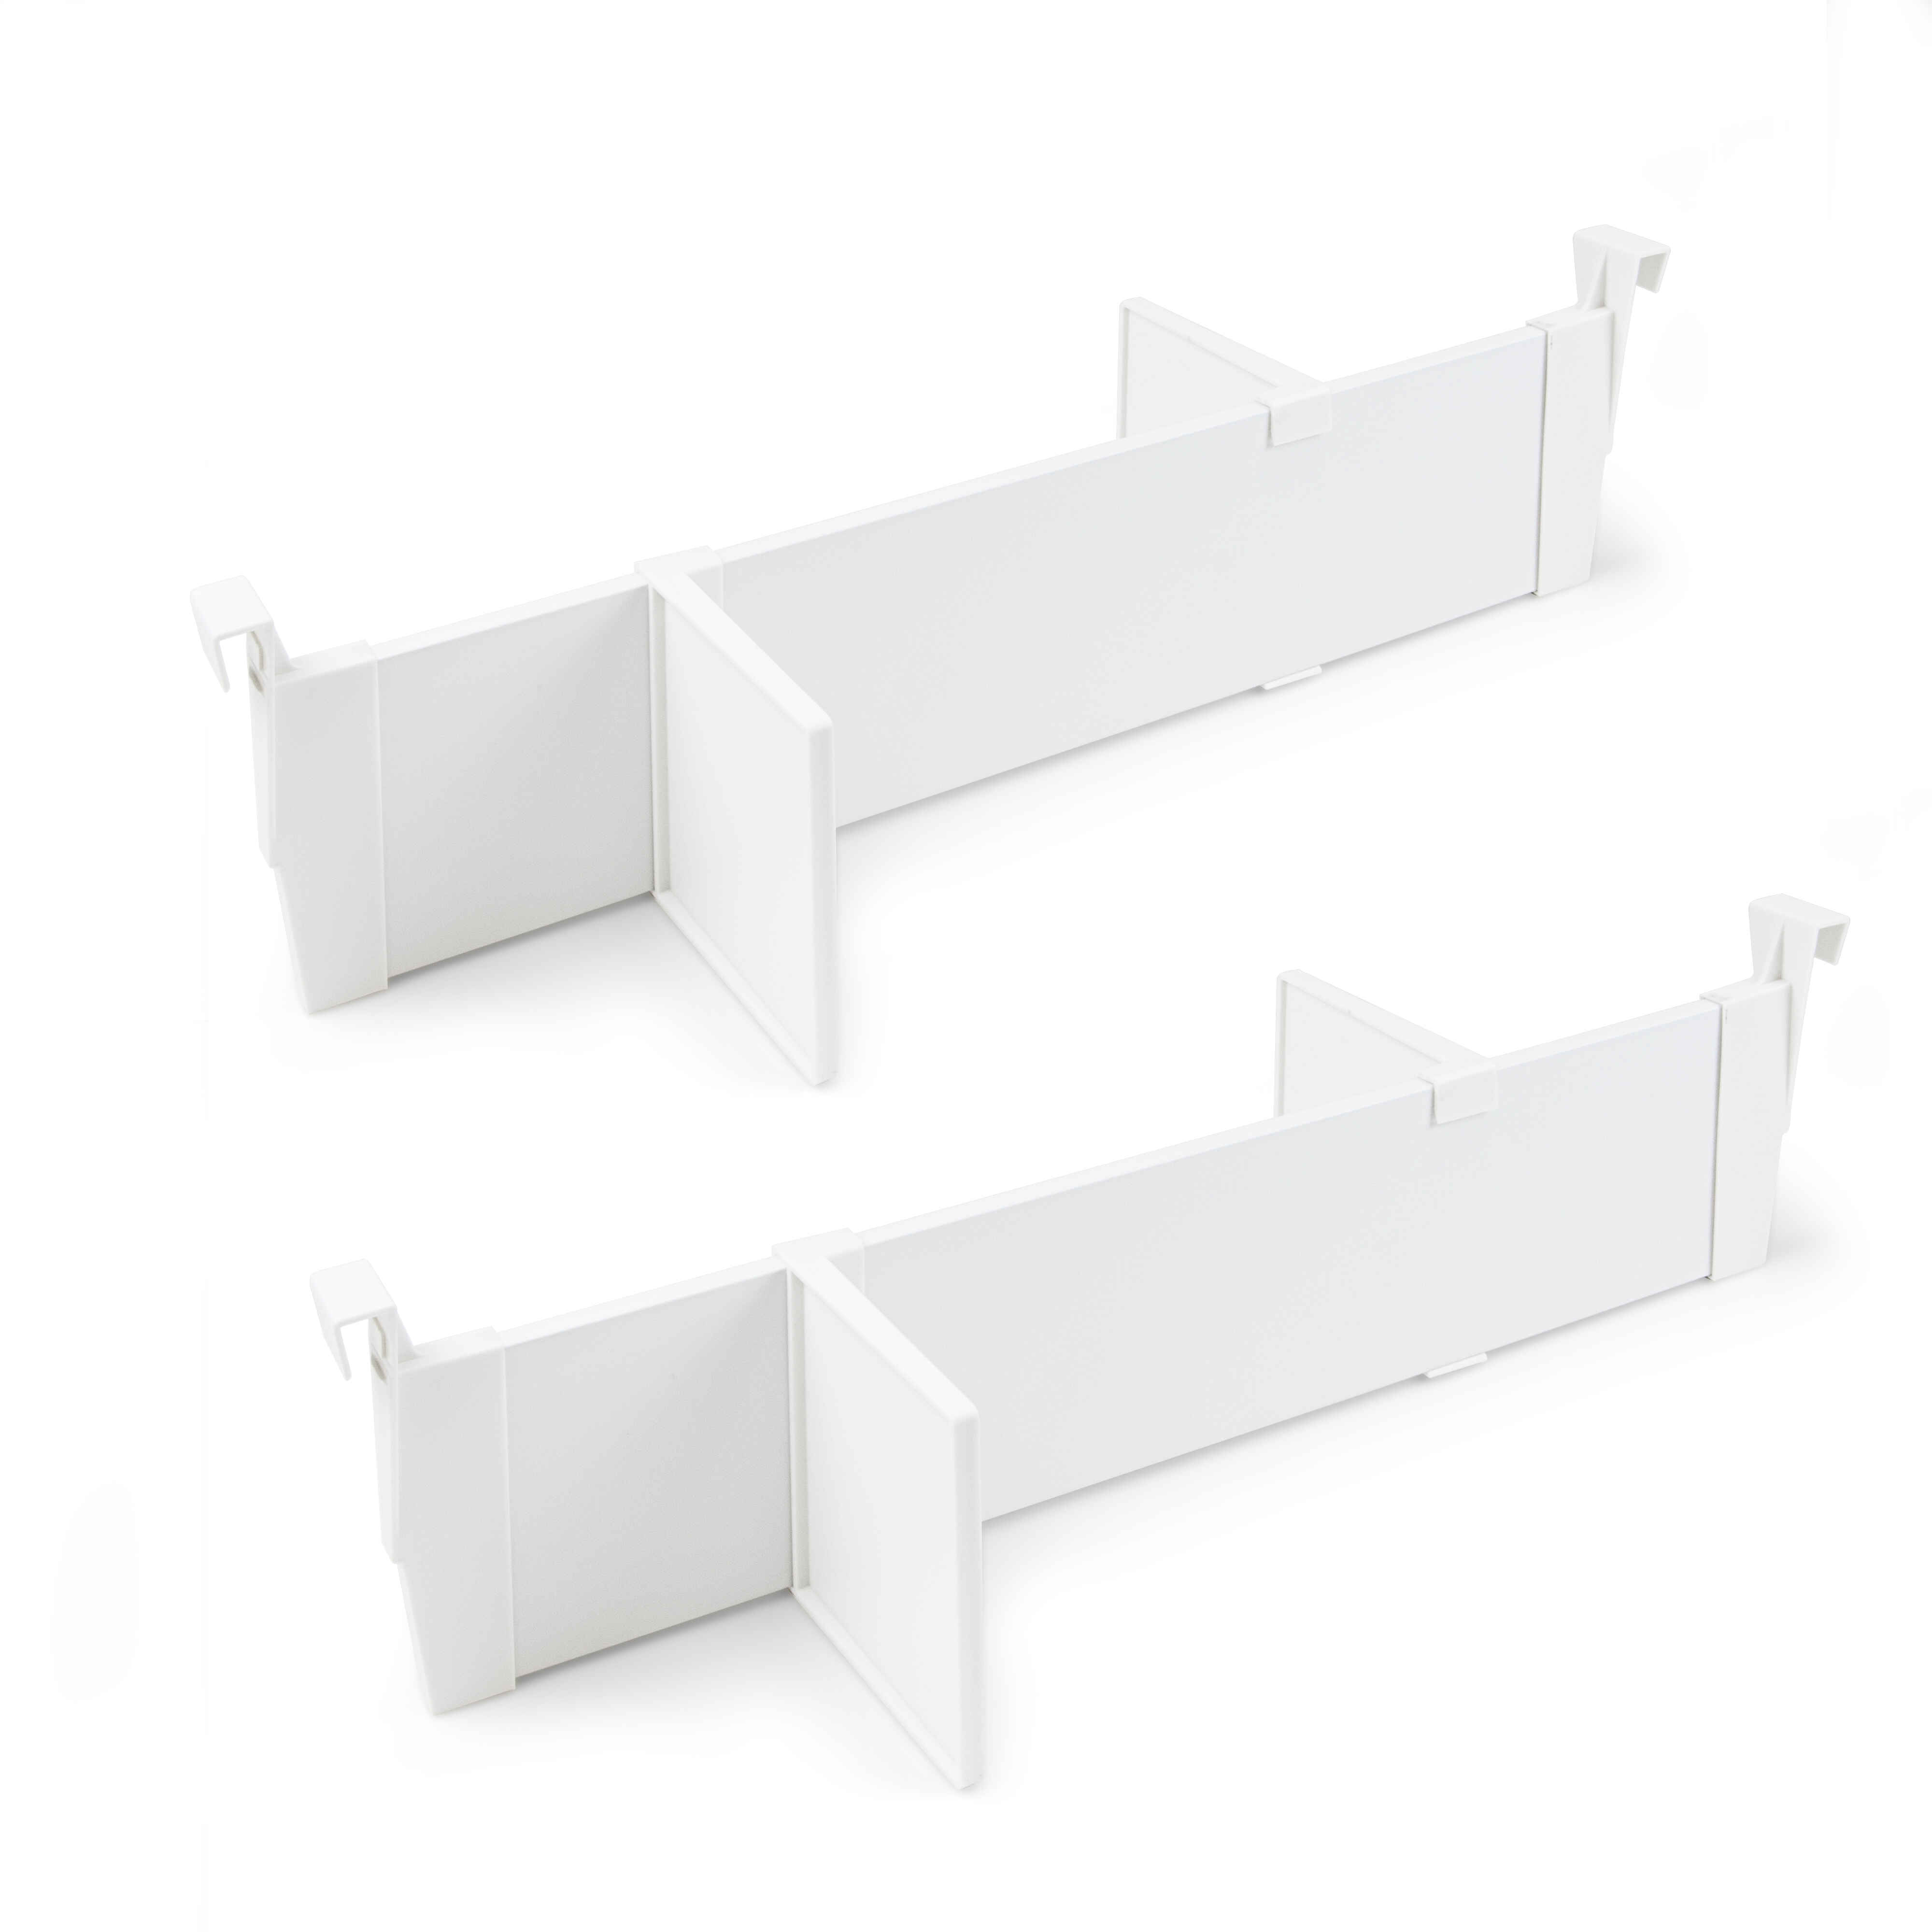 Juego de divisores para interior de cajones Vertex-Concept, 600, Pintado blanco, Plástico y Aluminio